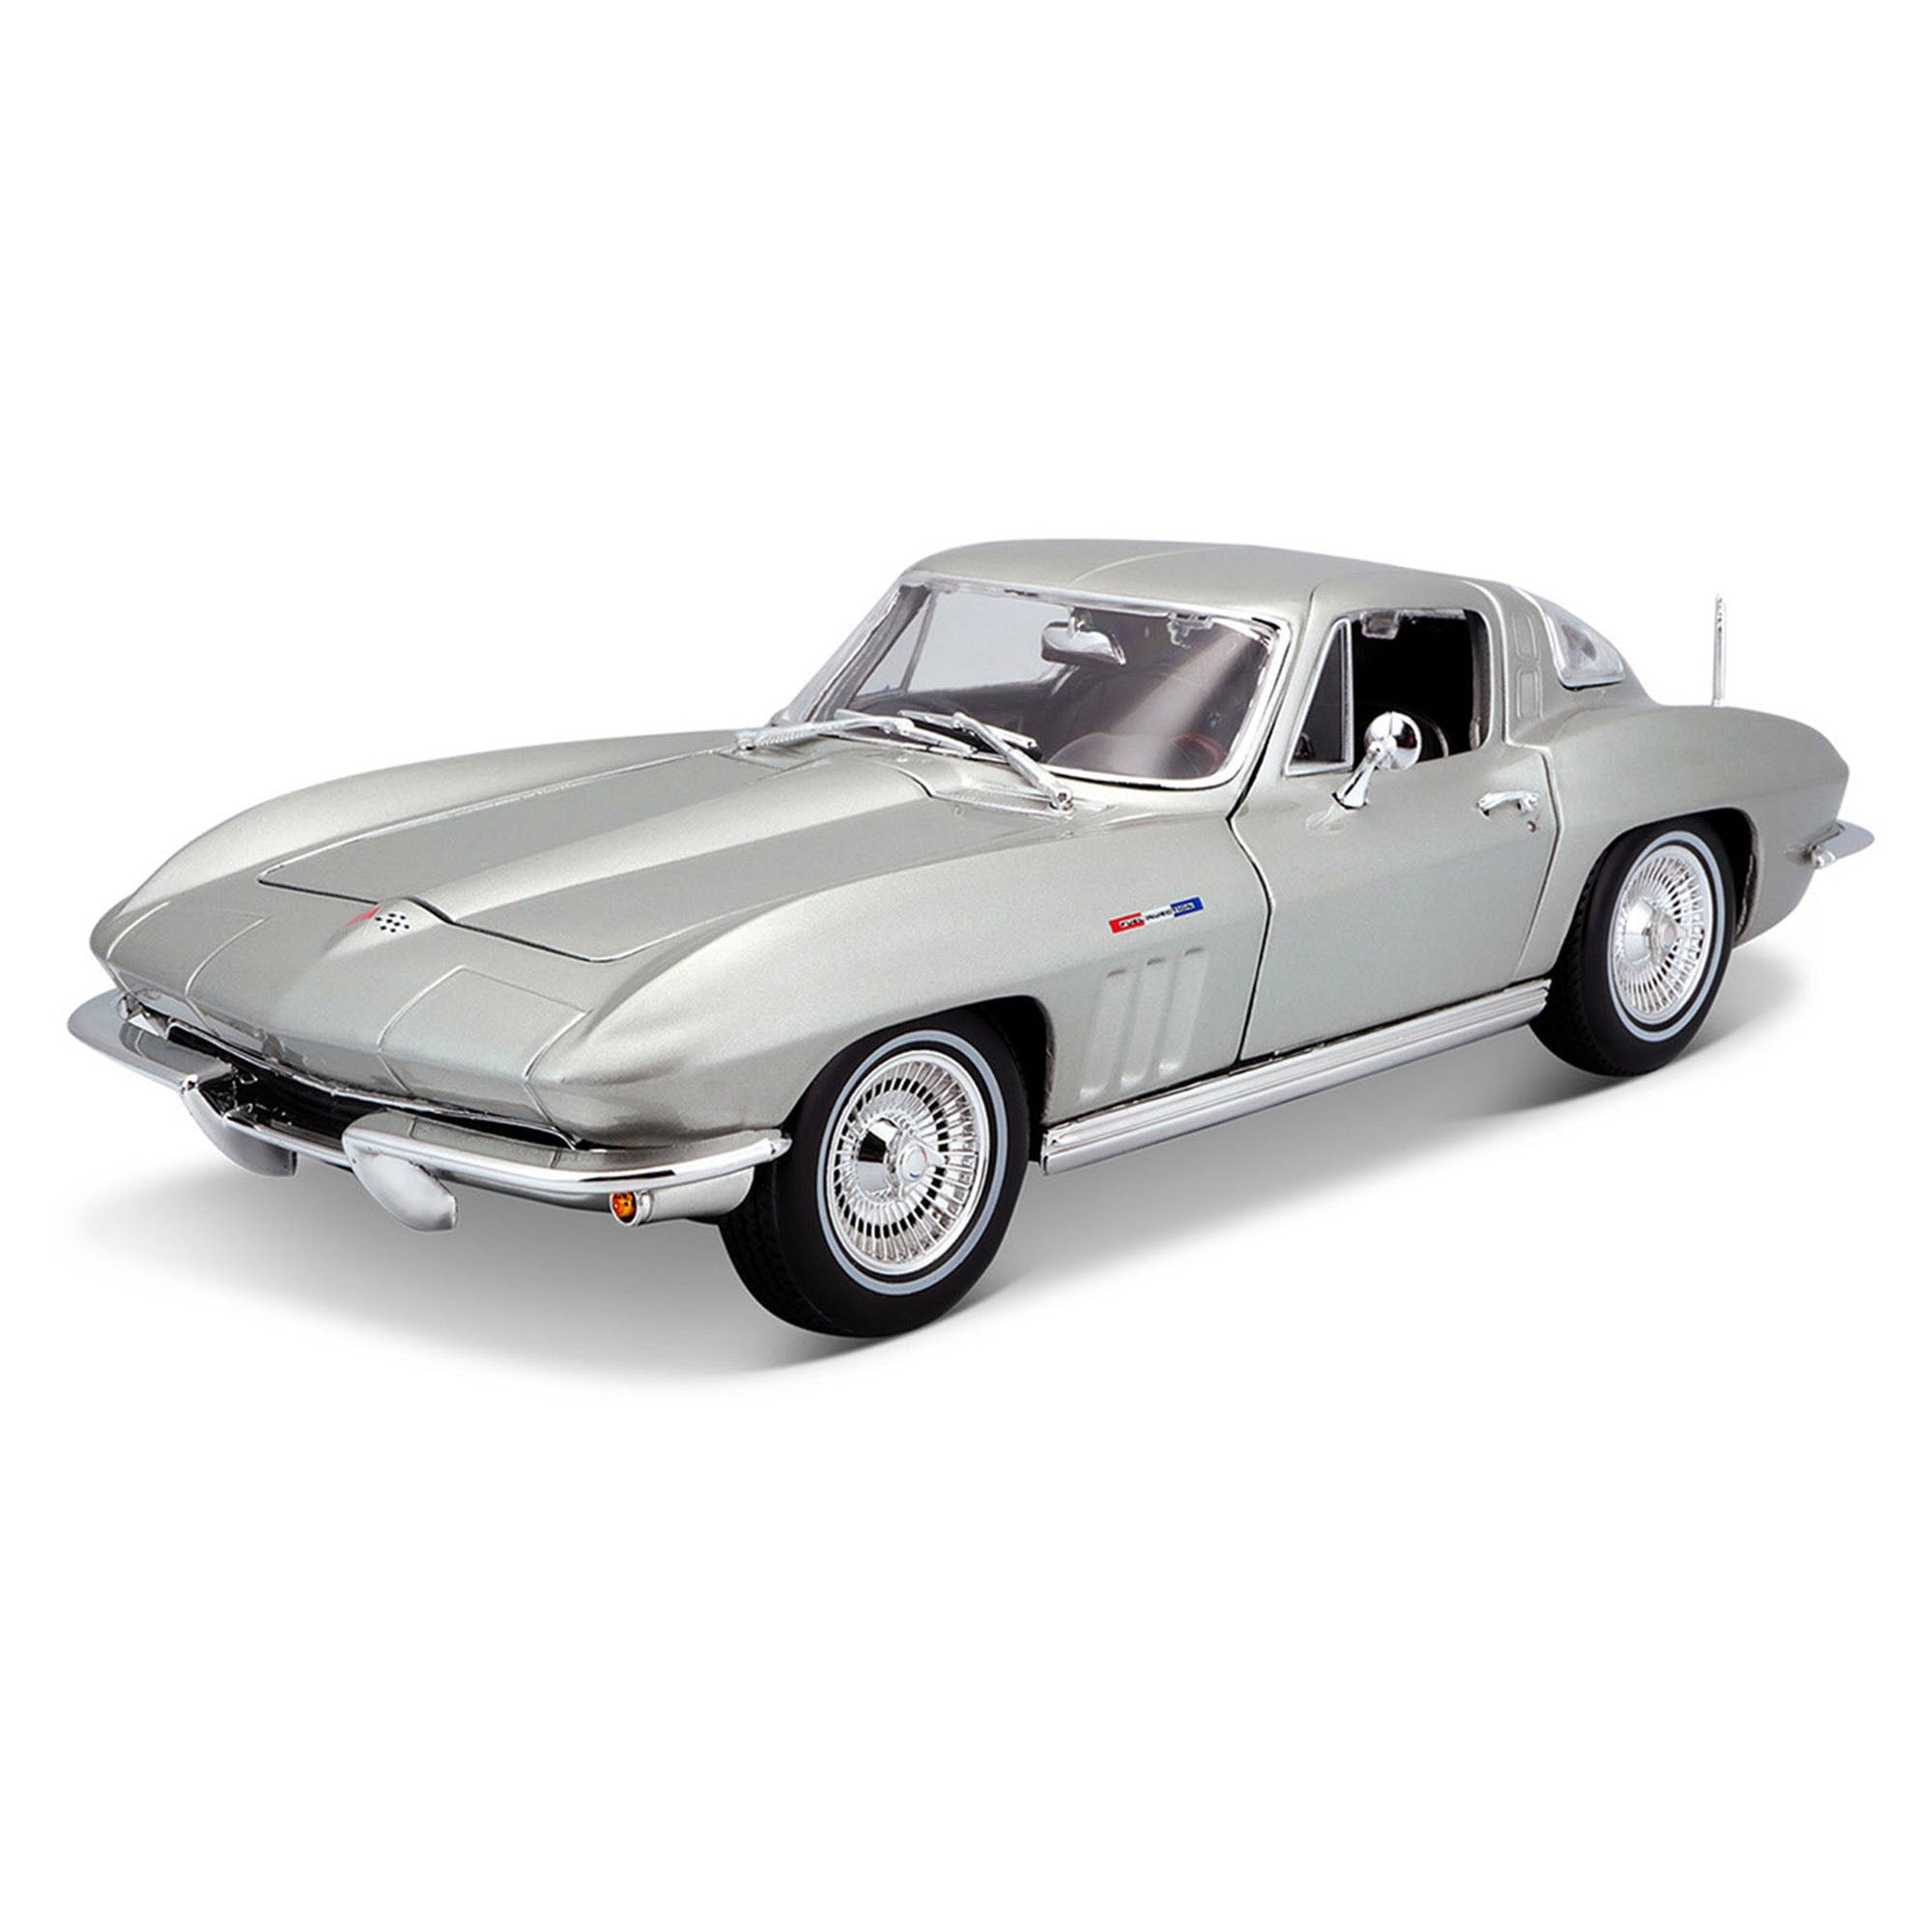 Maisto 1:18 1965 Chevrolet Corvette Coupe - Silver